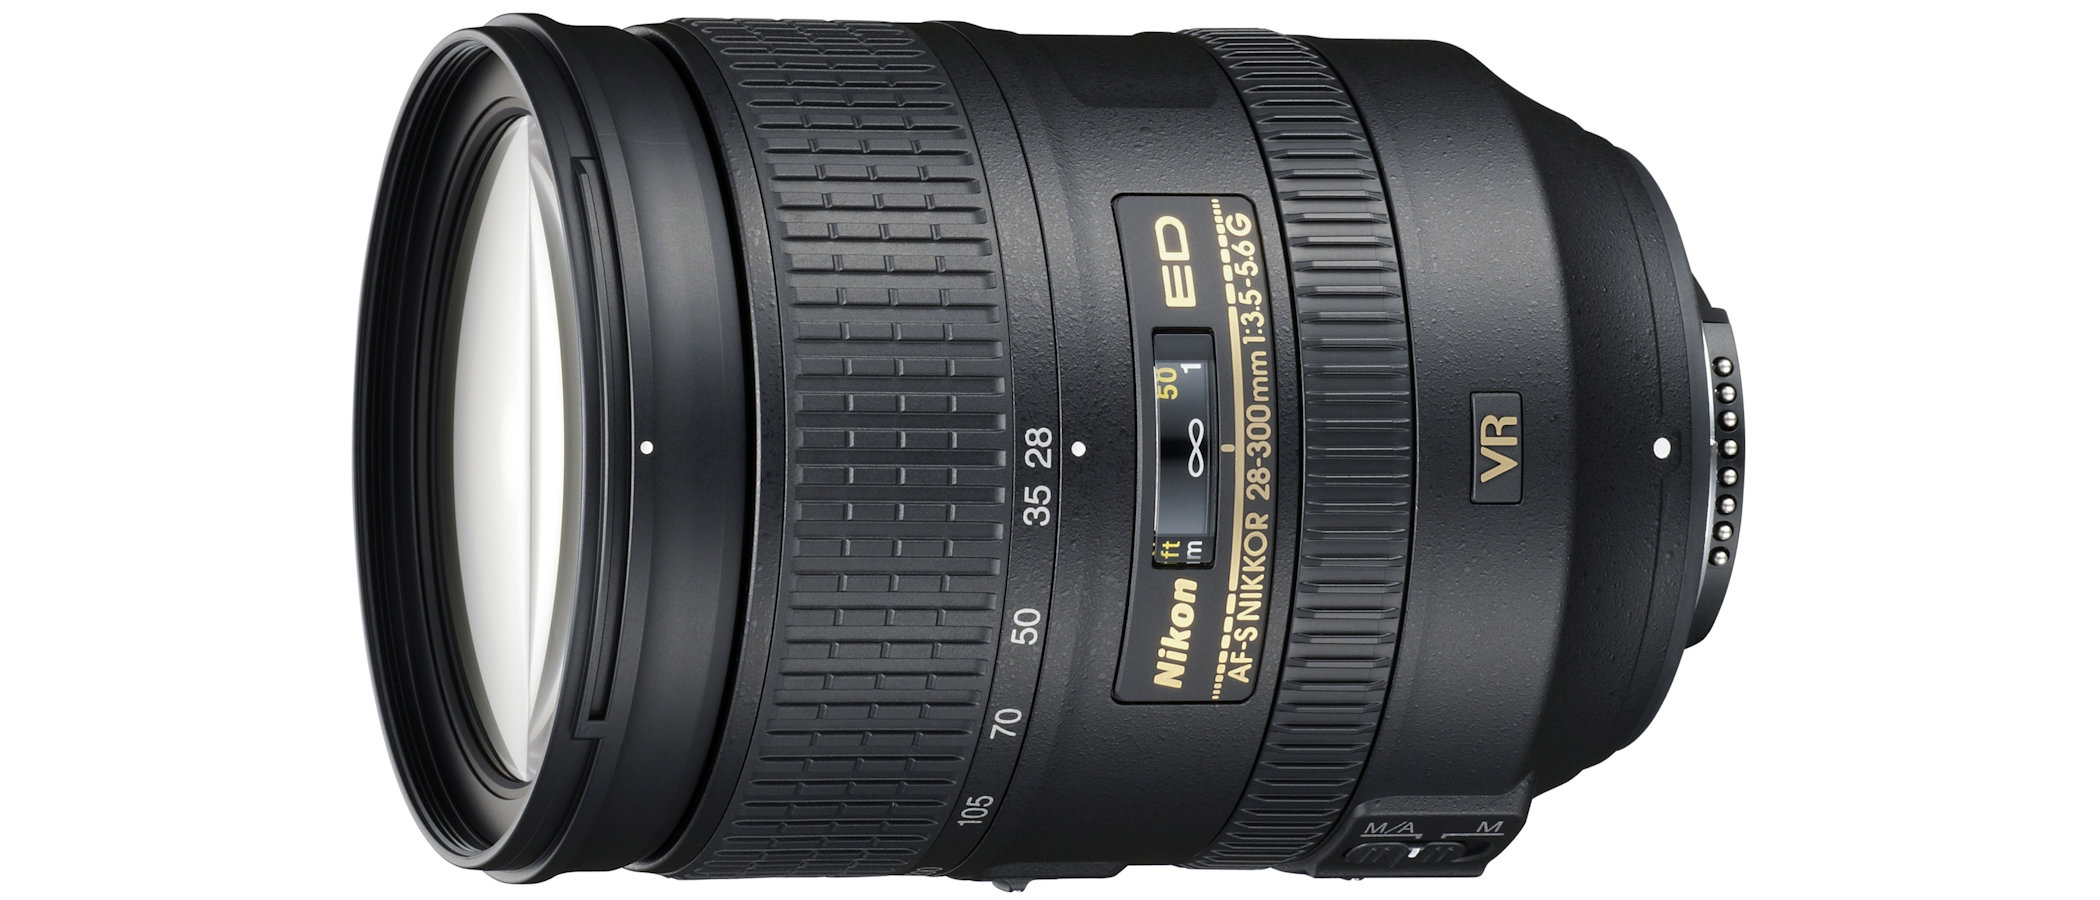 Nikon AF-S 28-300mm f/3.5-5.6G ED VR review | Digital Camera World